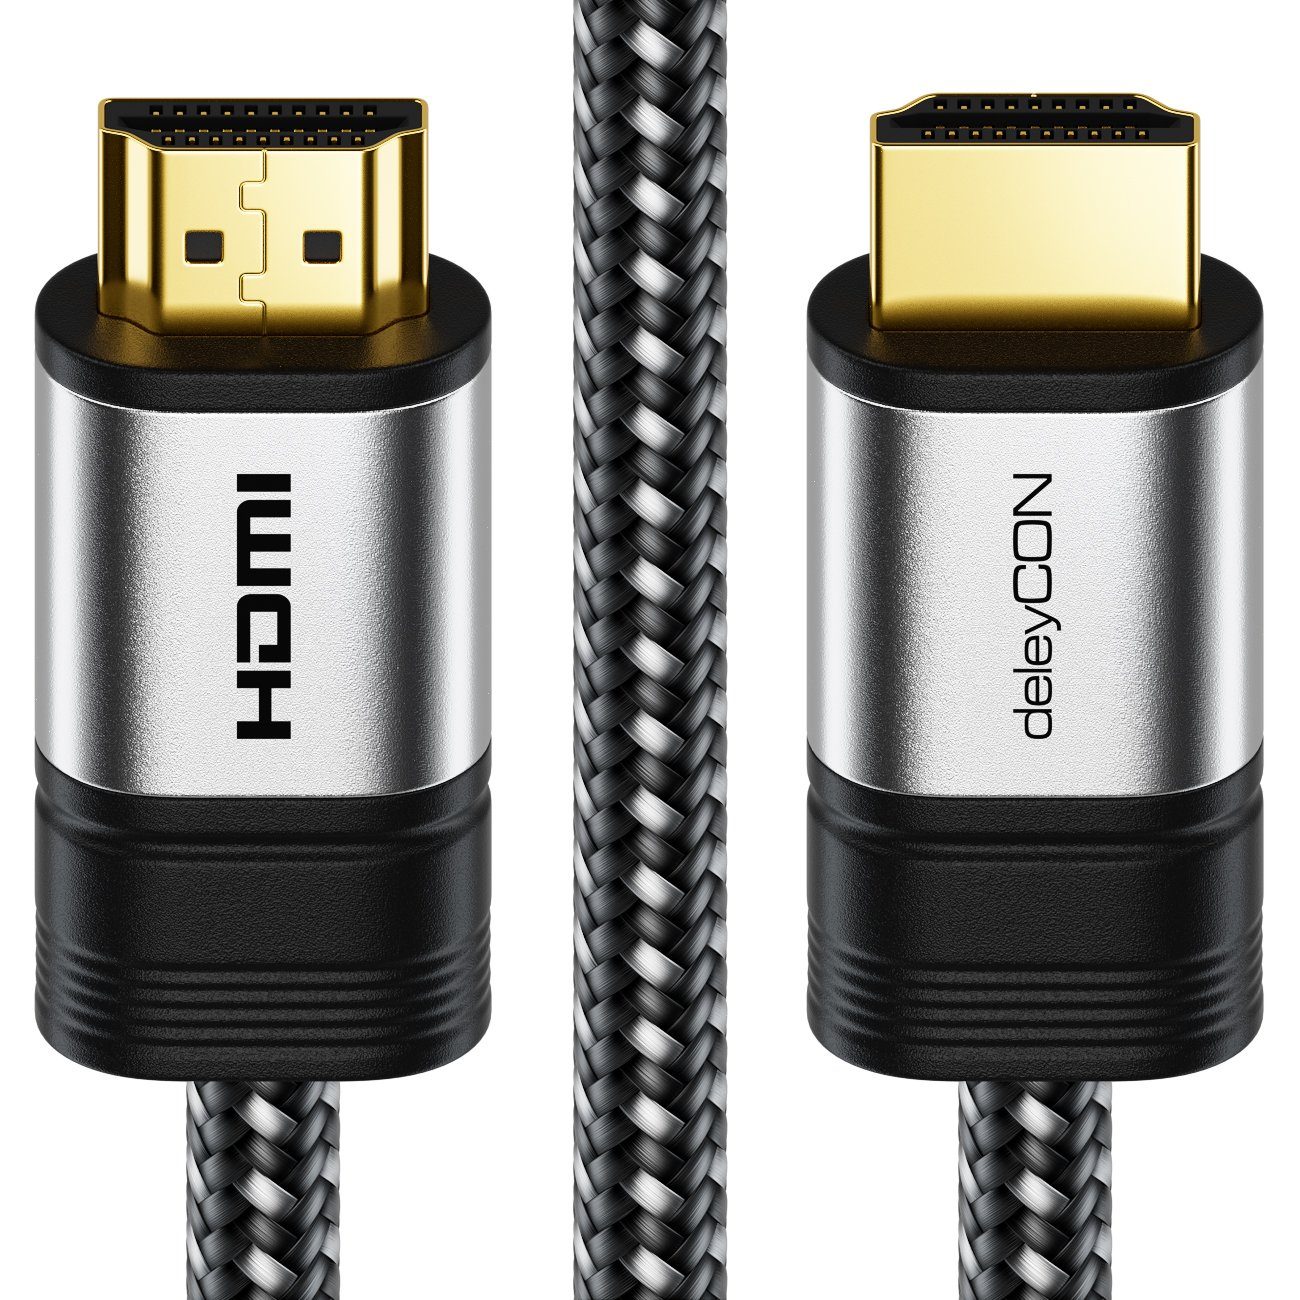 deleyCON »deleyCON 1m 4K UHD HDMI Kabel mit Metallstecker und Nylonmantel  2160p ULTRA HD« HDMI-Kabel online kaufen | OTTO